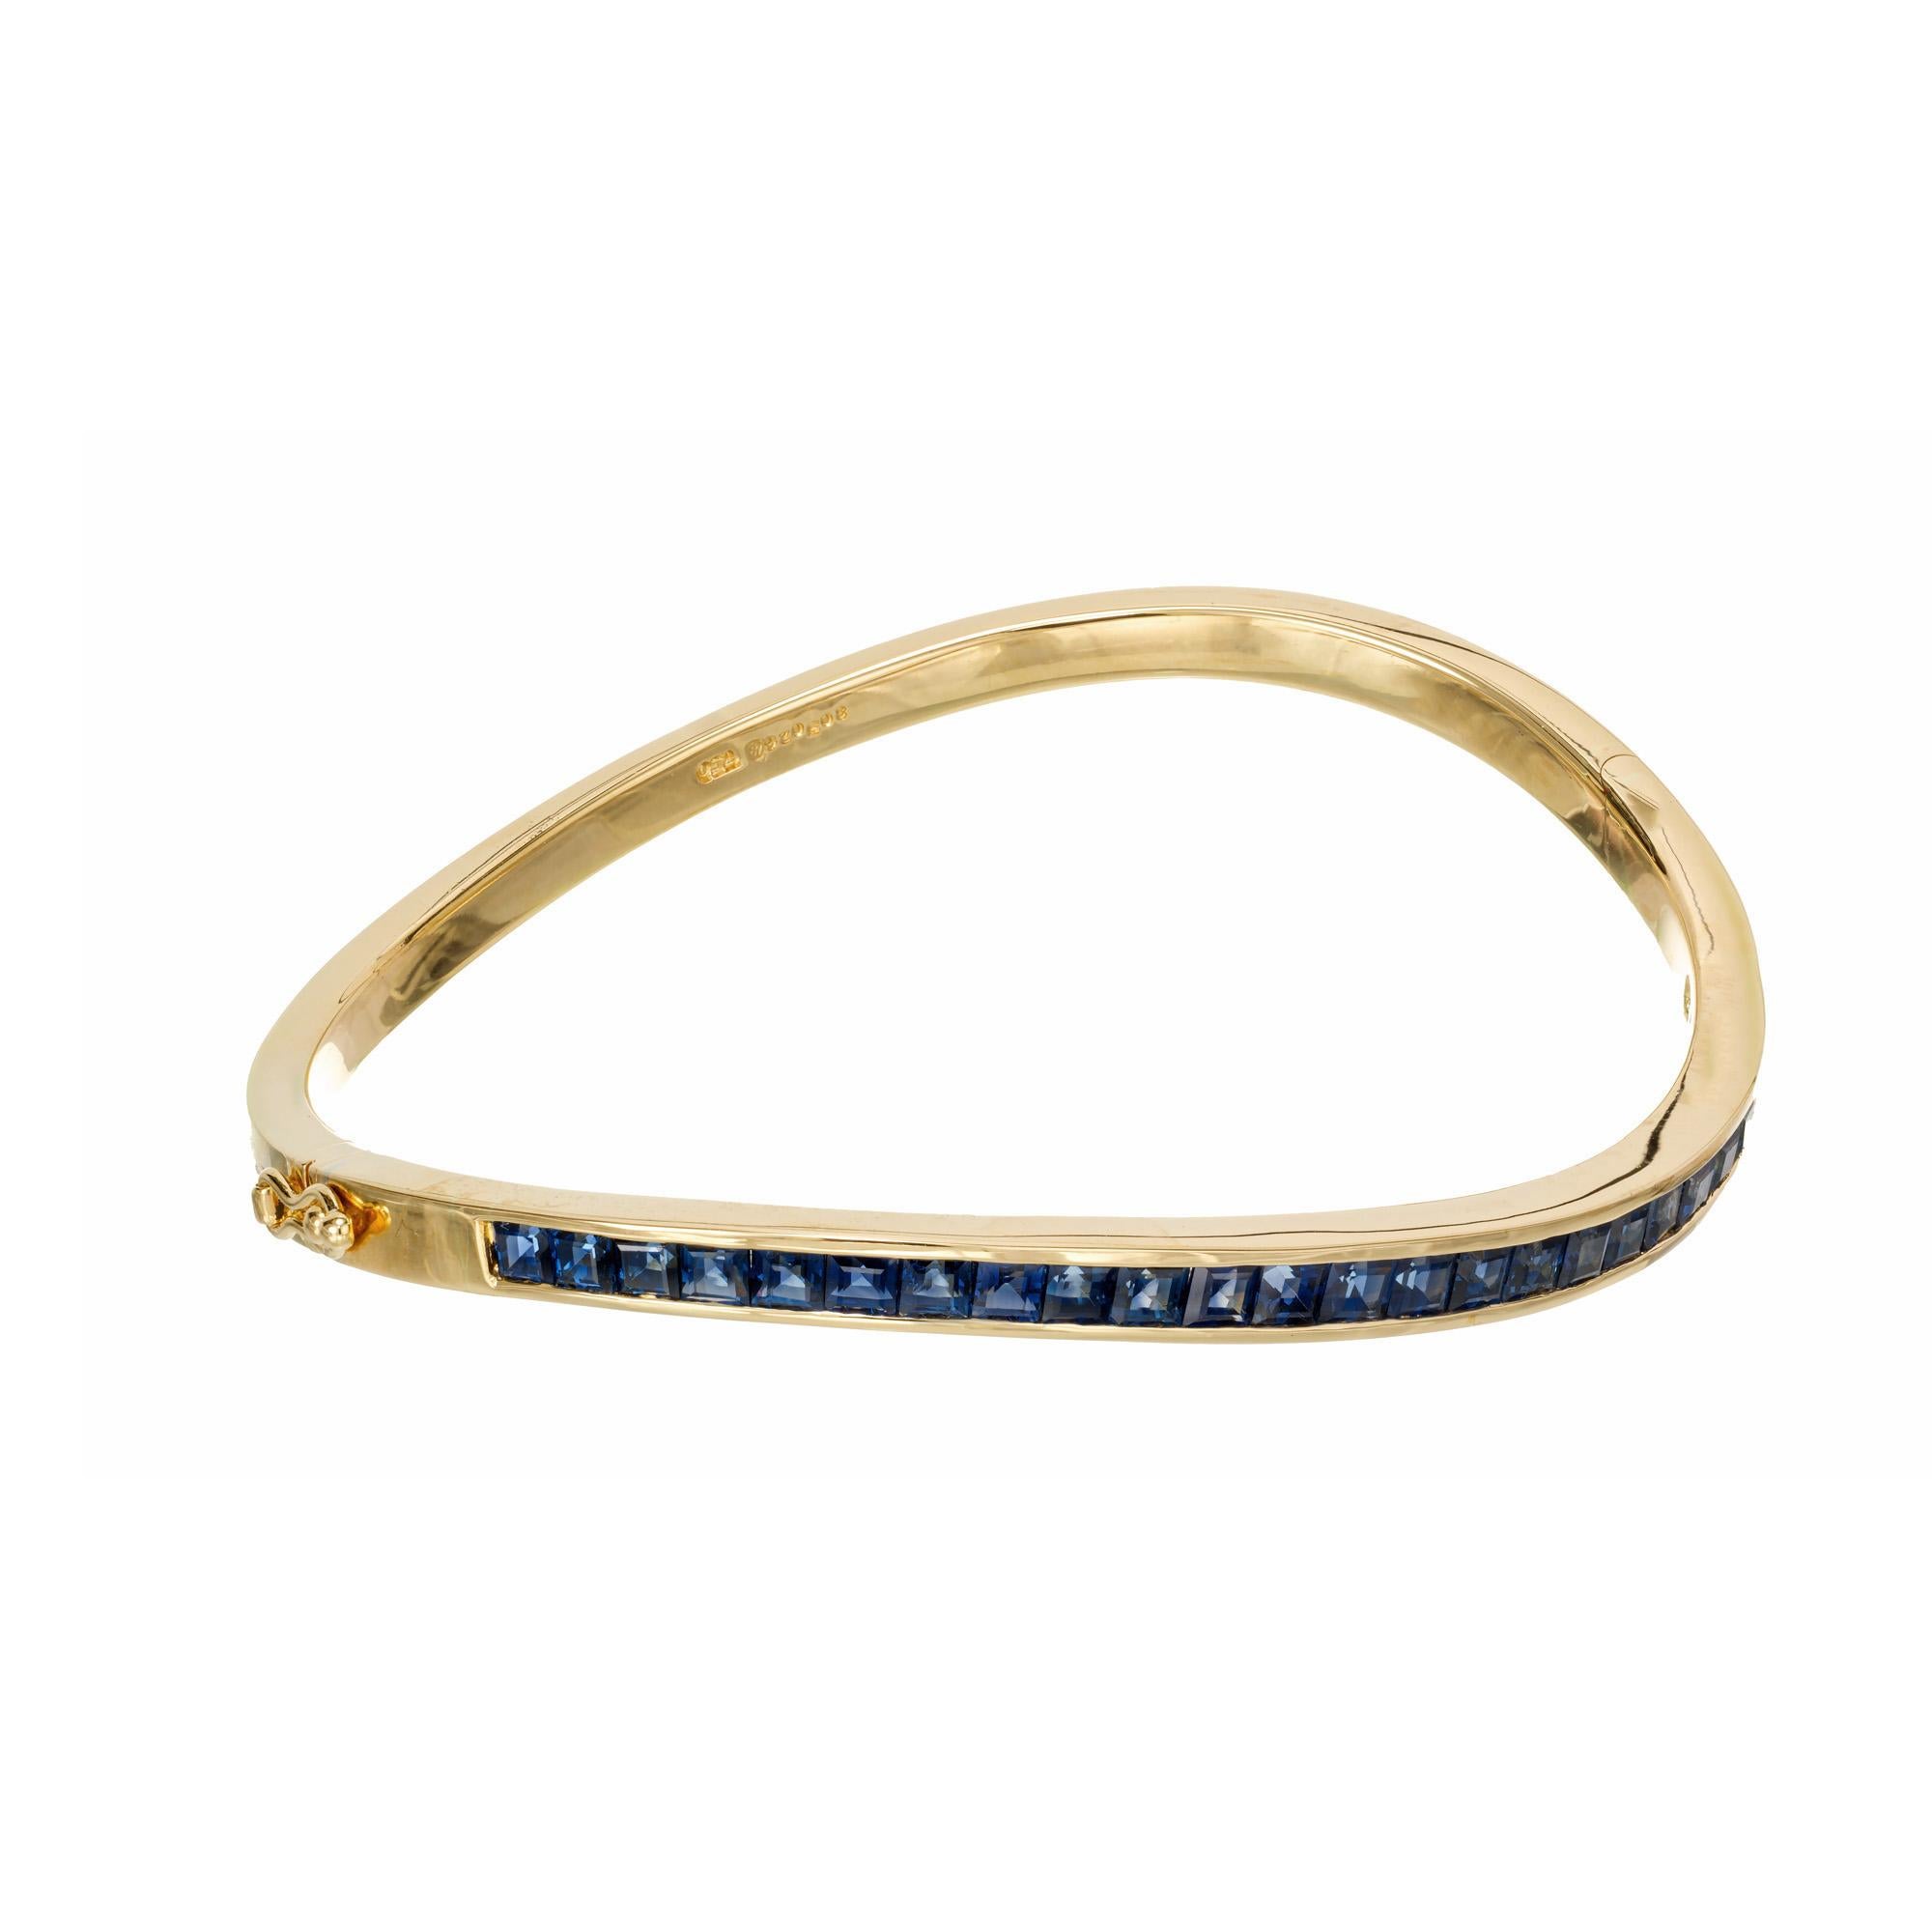 Oscar Heyman Brothers sehr feine benutzerdefinierte Französisch geschnitten Wirbel Chanel Set blauen Saphir Armreif in 18k Gold. GIA-zertifiziert, keine Hitze, keine Veredelungen. Passt für ein 6,5 -7,25 Zoll Handgelenk

25 quadratische blaue